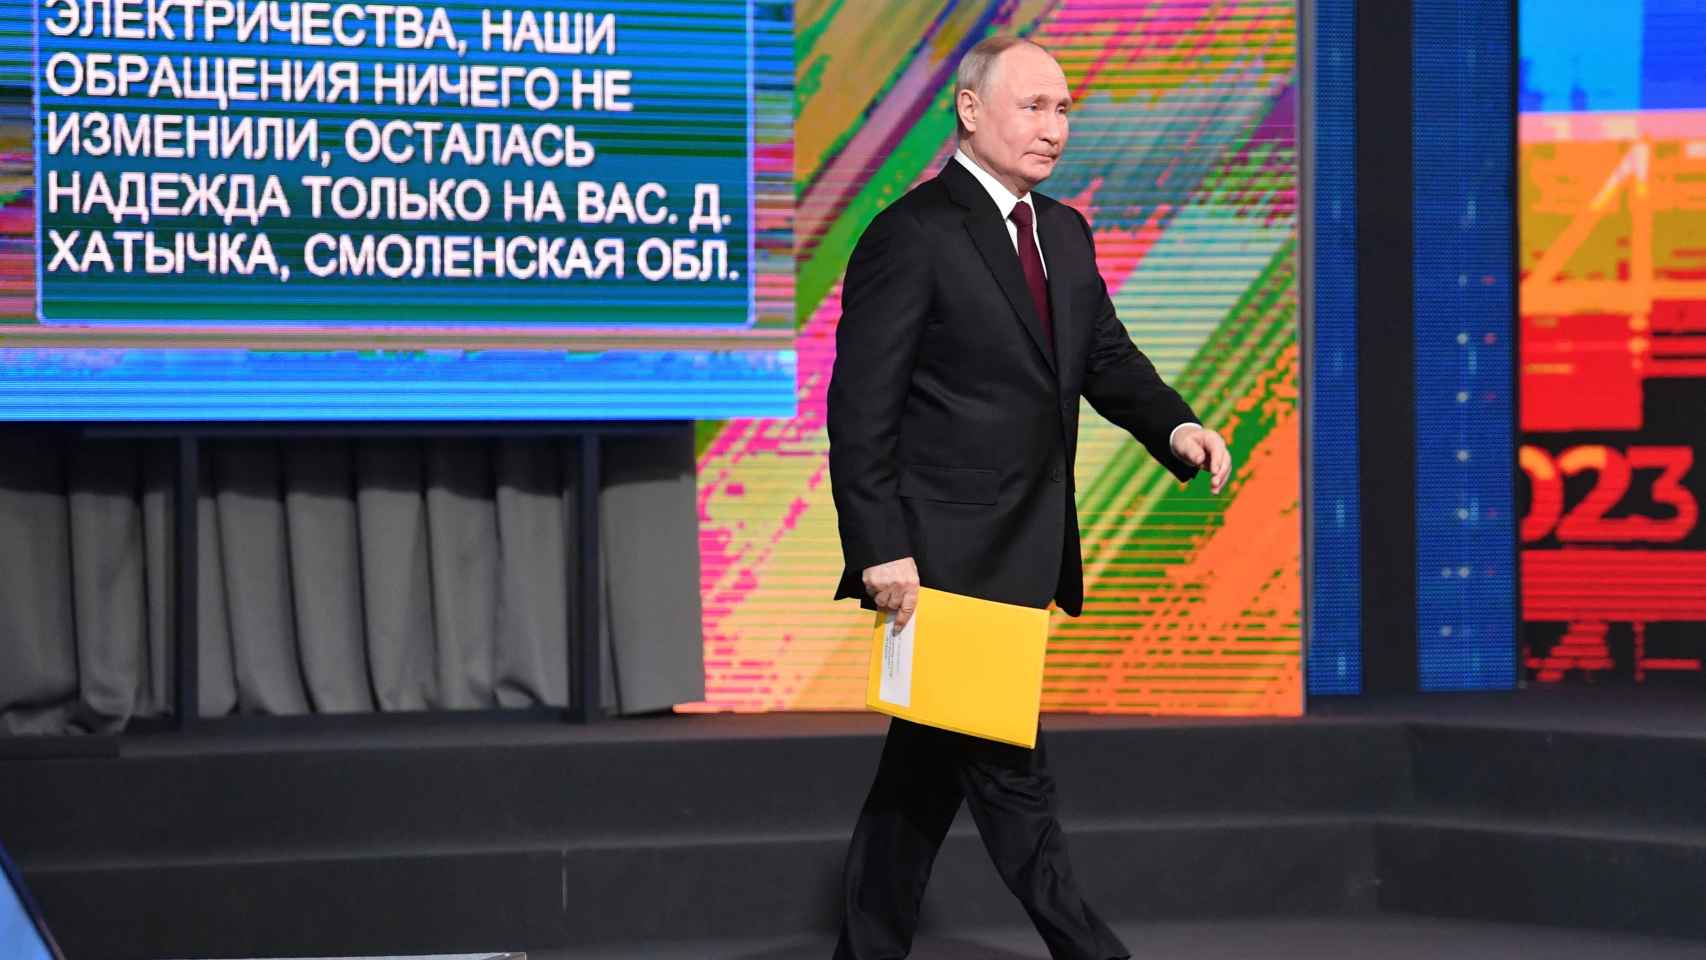 El presidente ruso Putin celebra su conferencia de prensa anual en Moscú.